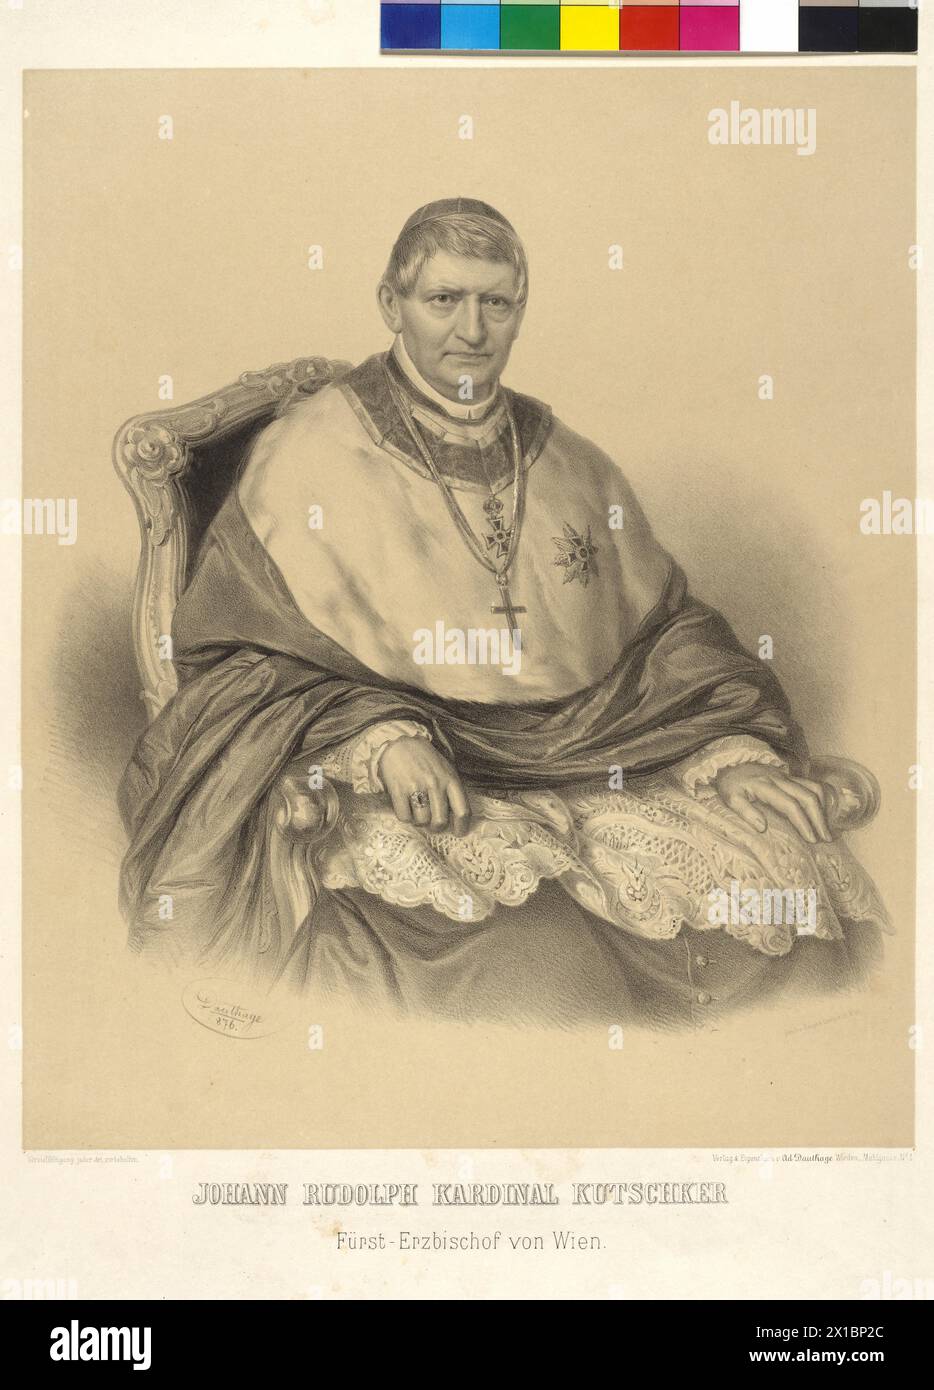 Johann Rudolf cardinal Kutschker Prince Archevêque de Vienne, lithographie tonique d'Adolf Dauthage, - 18760101 PD0938 - Rechteinfo : droits gérés (RM) Banque D'Images